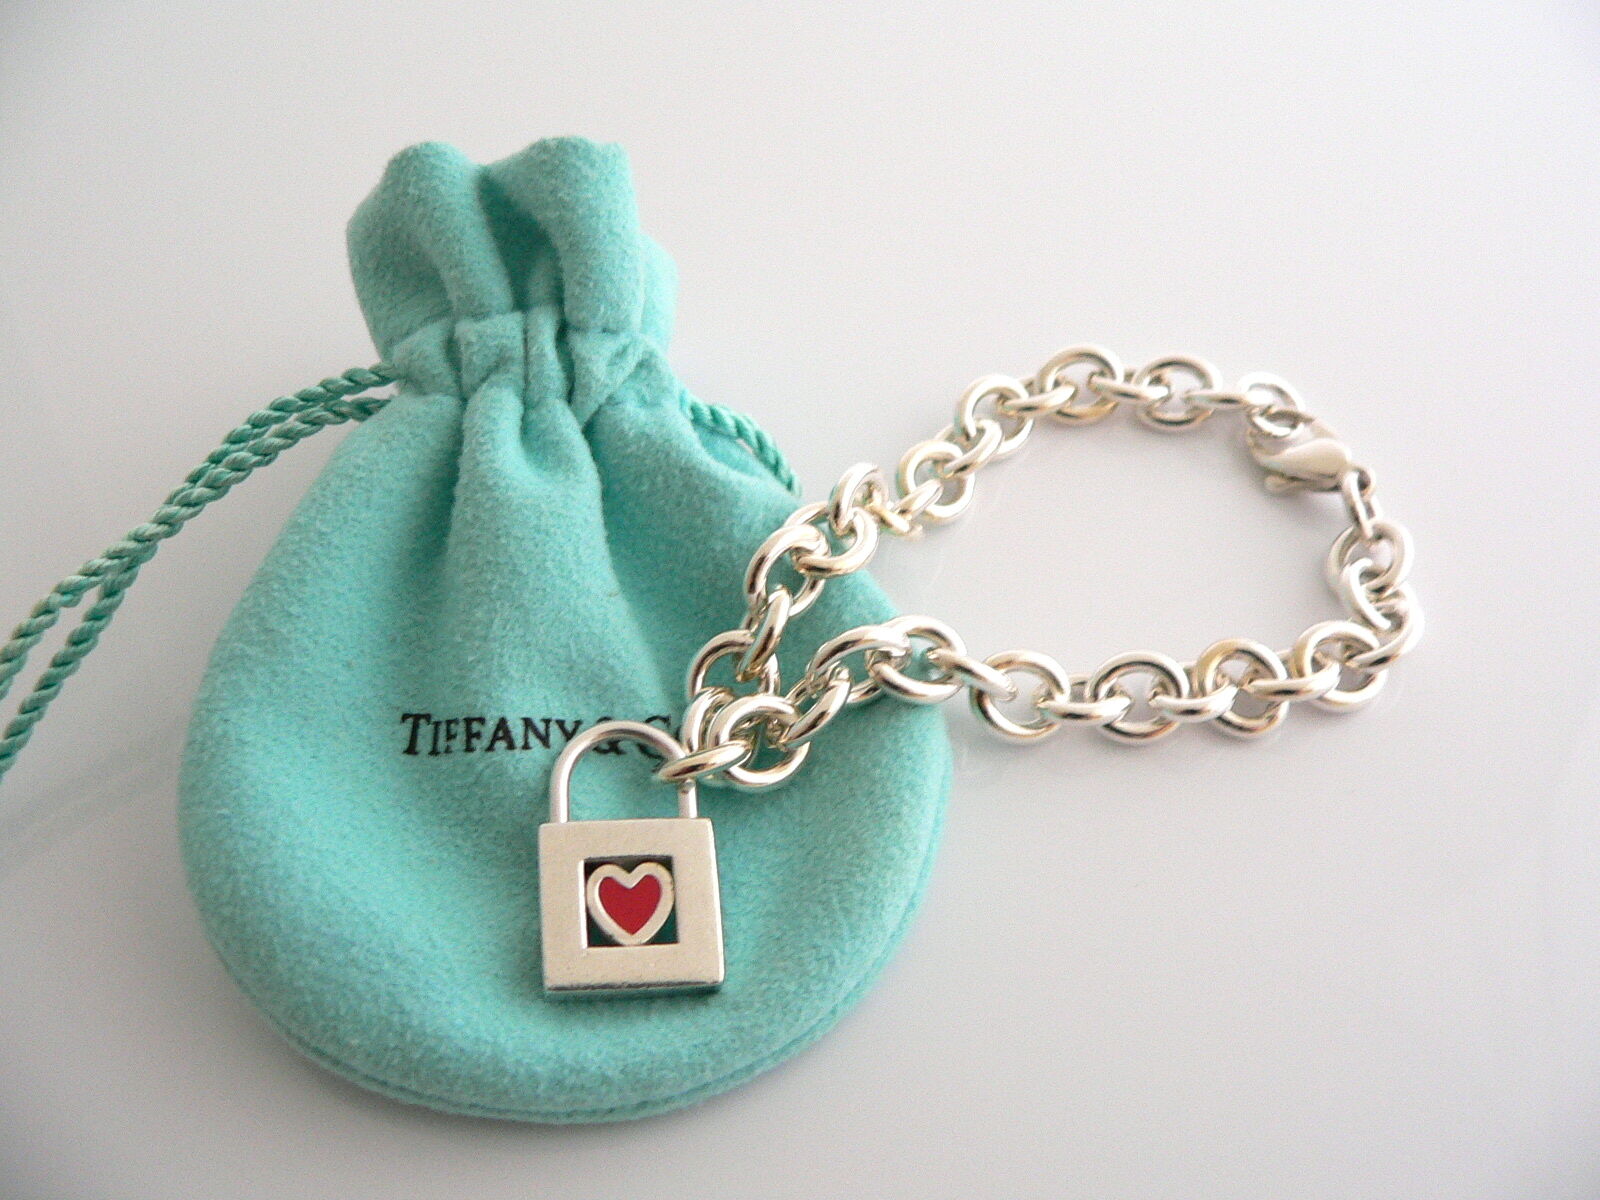 Tiffany's New ICON Lock bracelet VS Cartier LOVE bracelet 💎 l